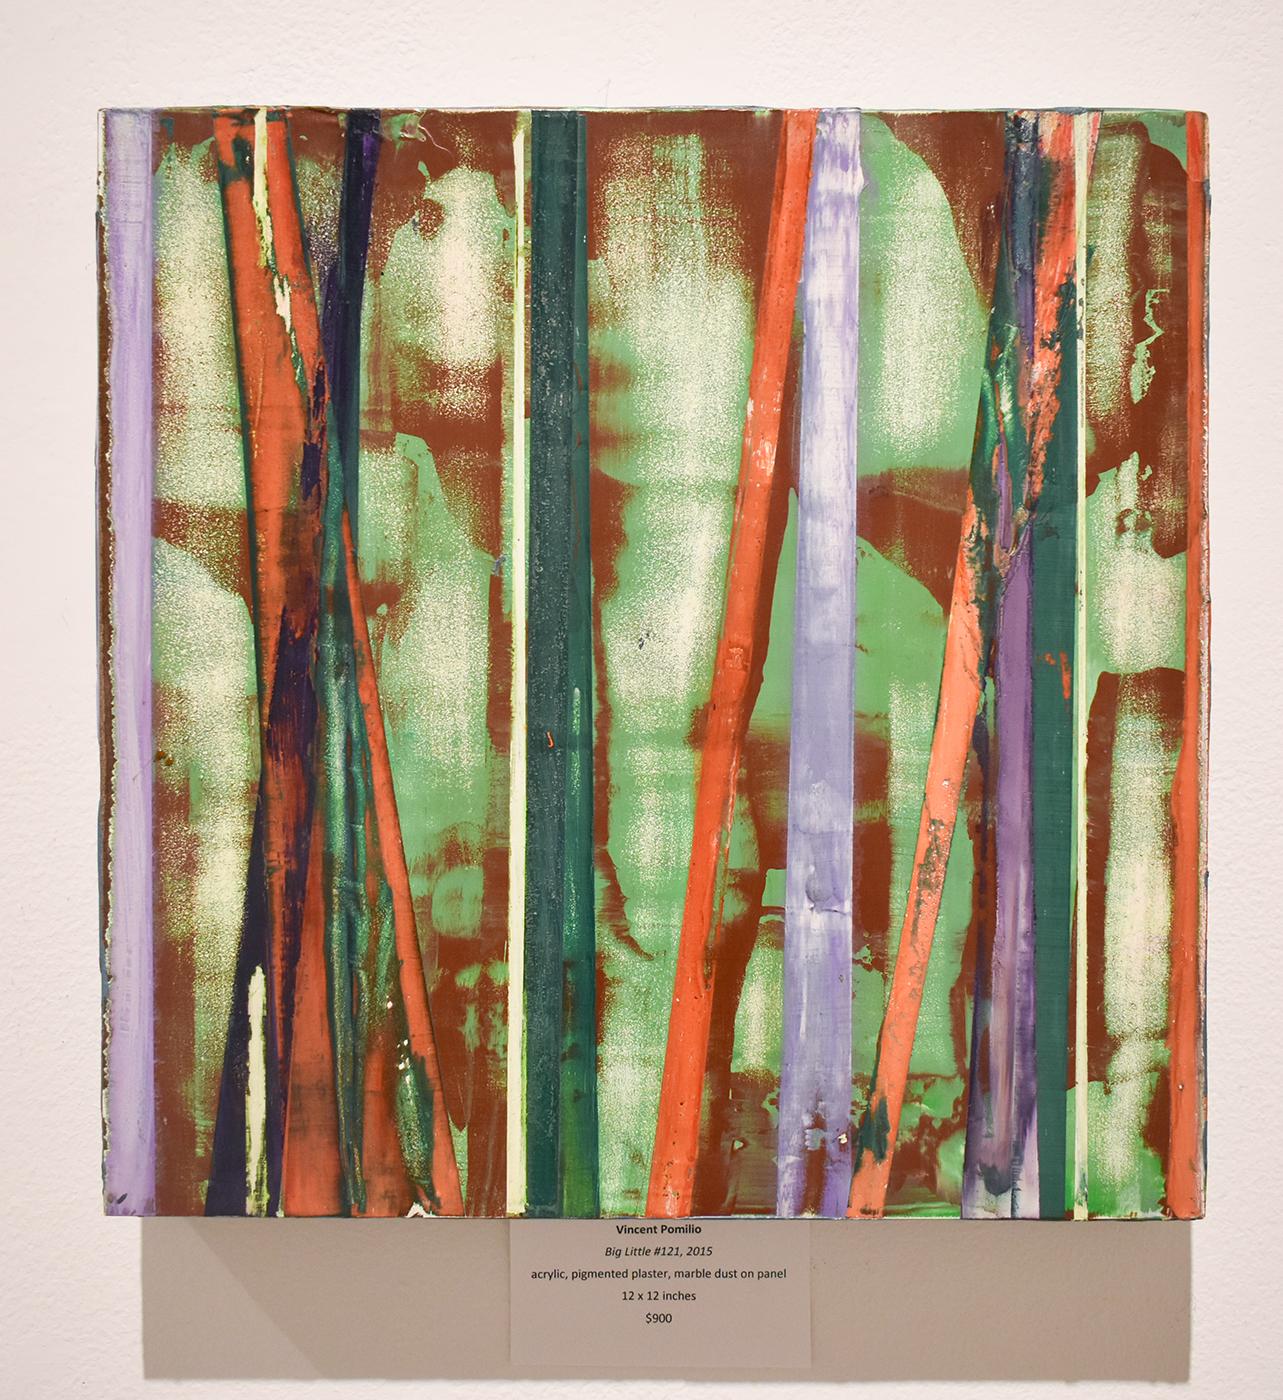 Big Little 121 (peinture abstraite géométrique multicolore en couches superposées sur supports mixtes) - Abstrait Mixed Media Art par Vincent Pomilio